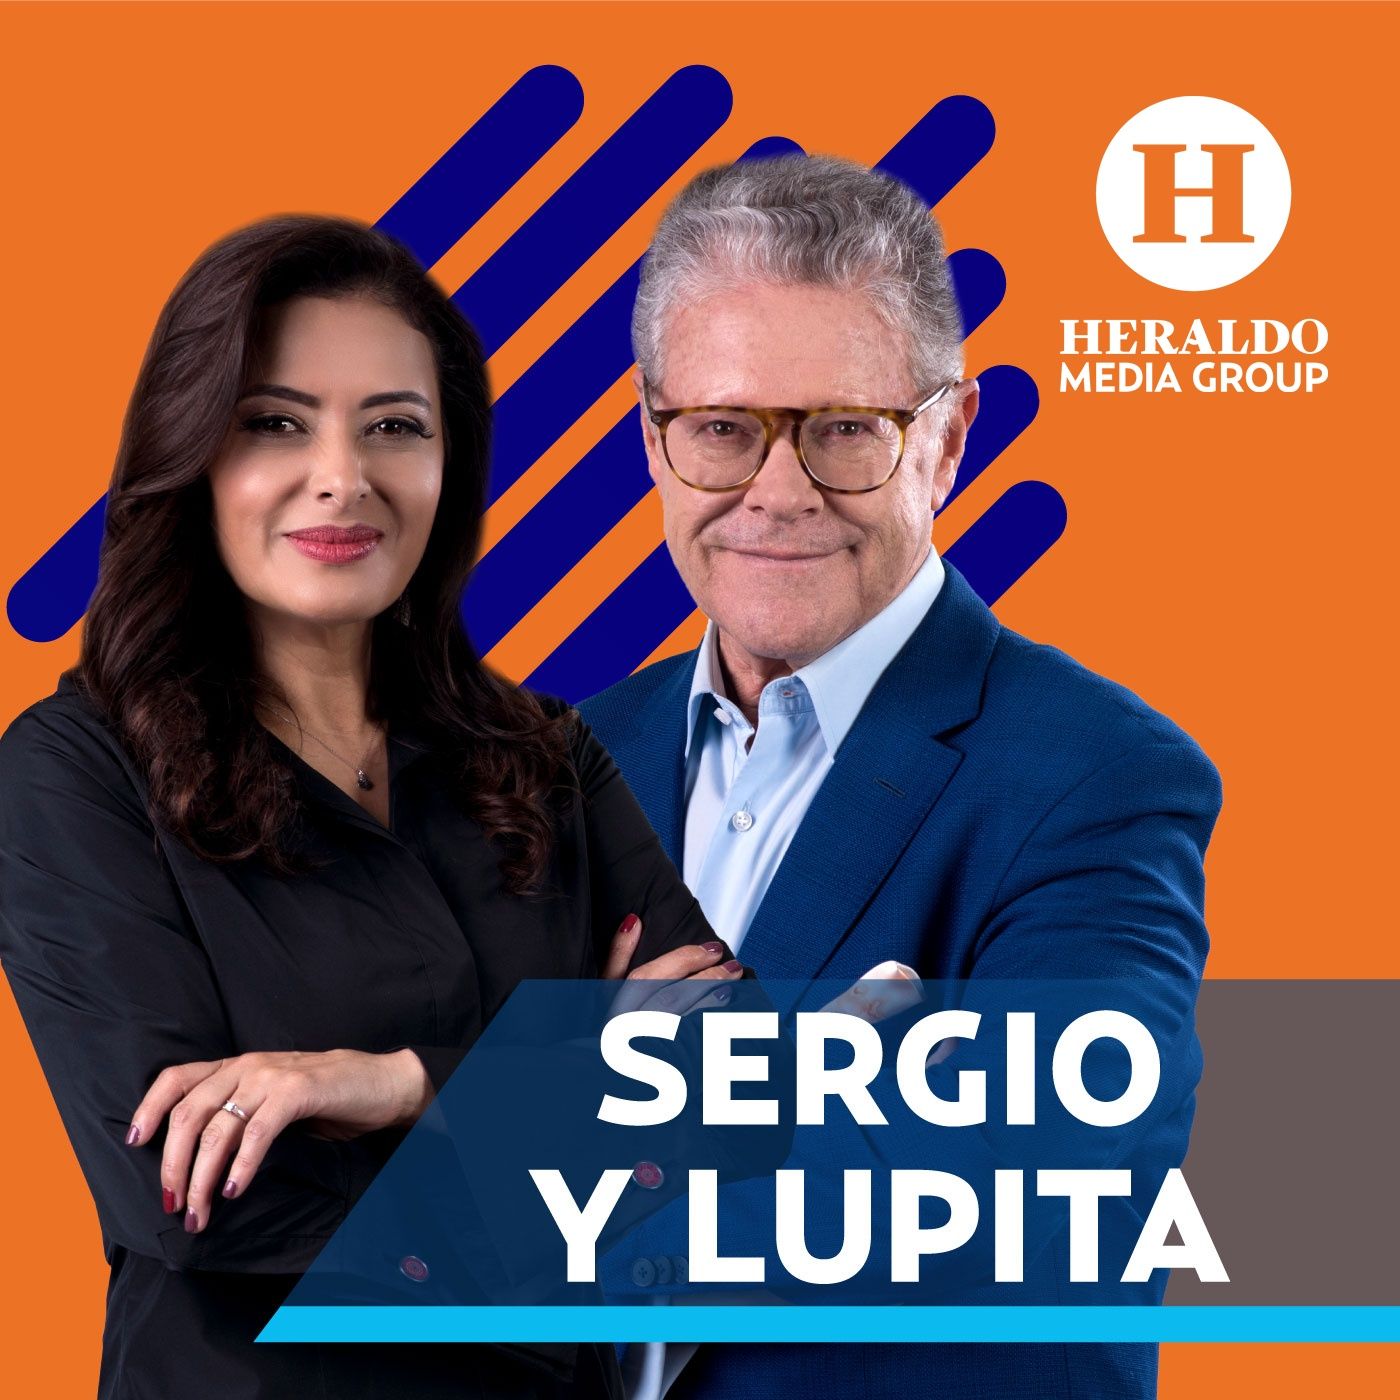 Sergio Sarmiento y Lupita Juárez | Programa completo jueves 4 de noviembre 2021